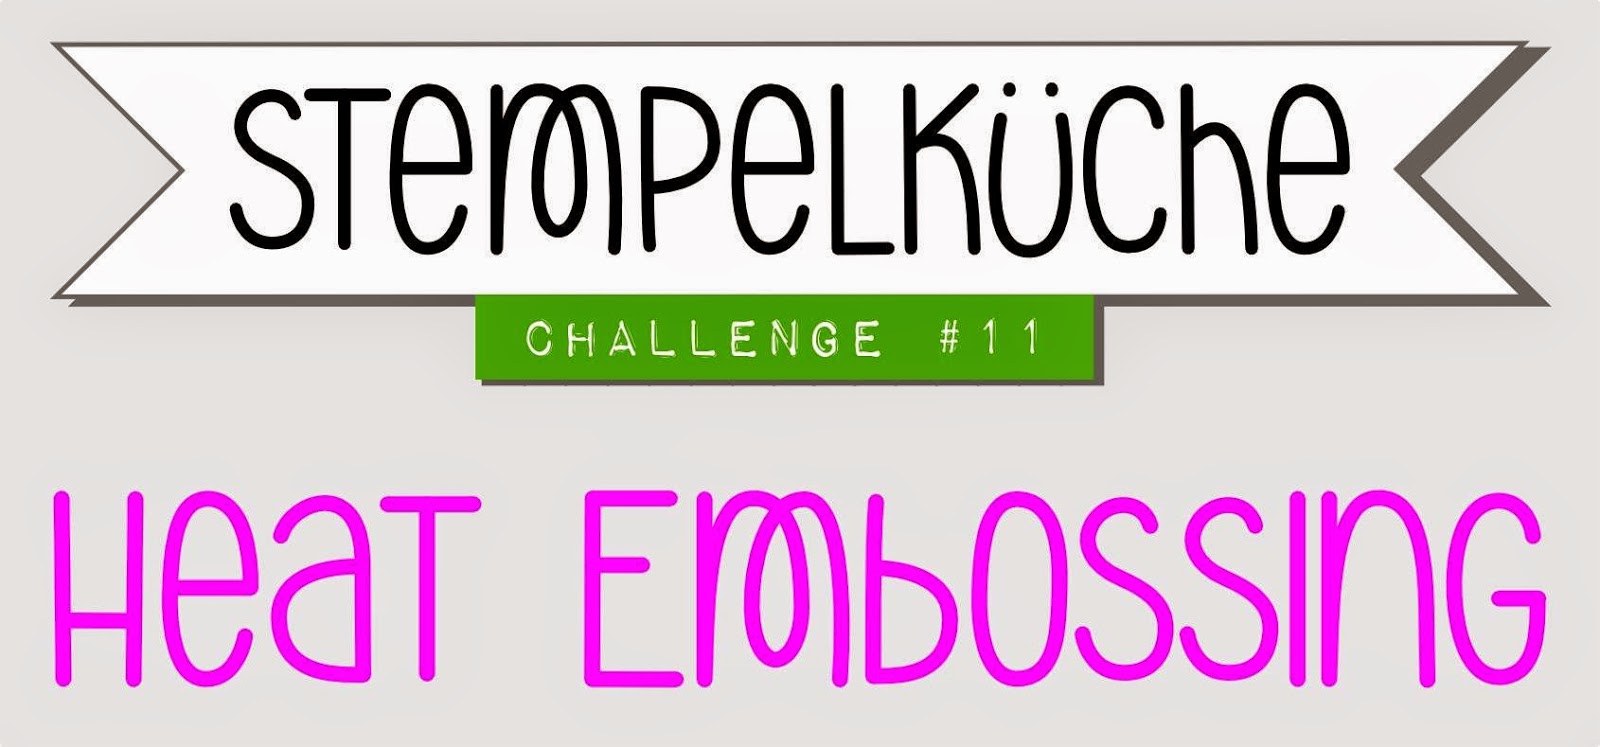 http://www.stempelkueche-challenge.blogspot.de/2015/01/stempelkuche-challenge-11-heat-embossing.html